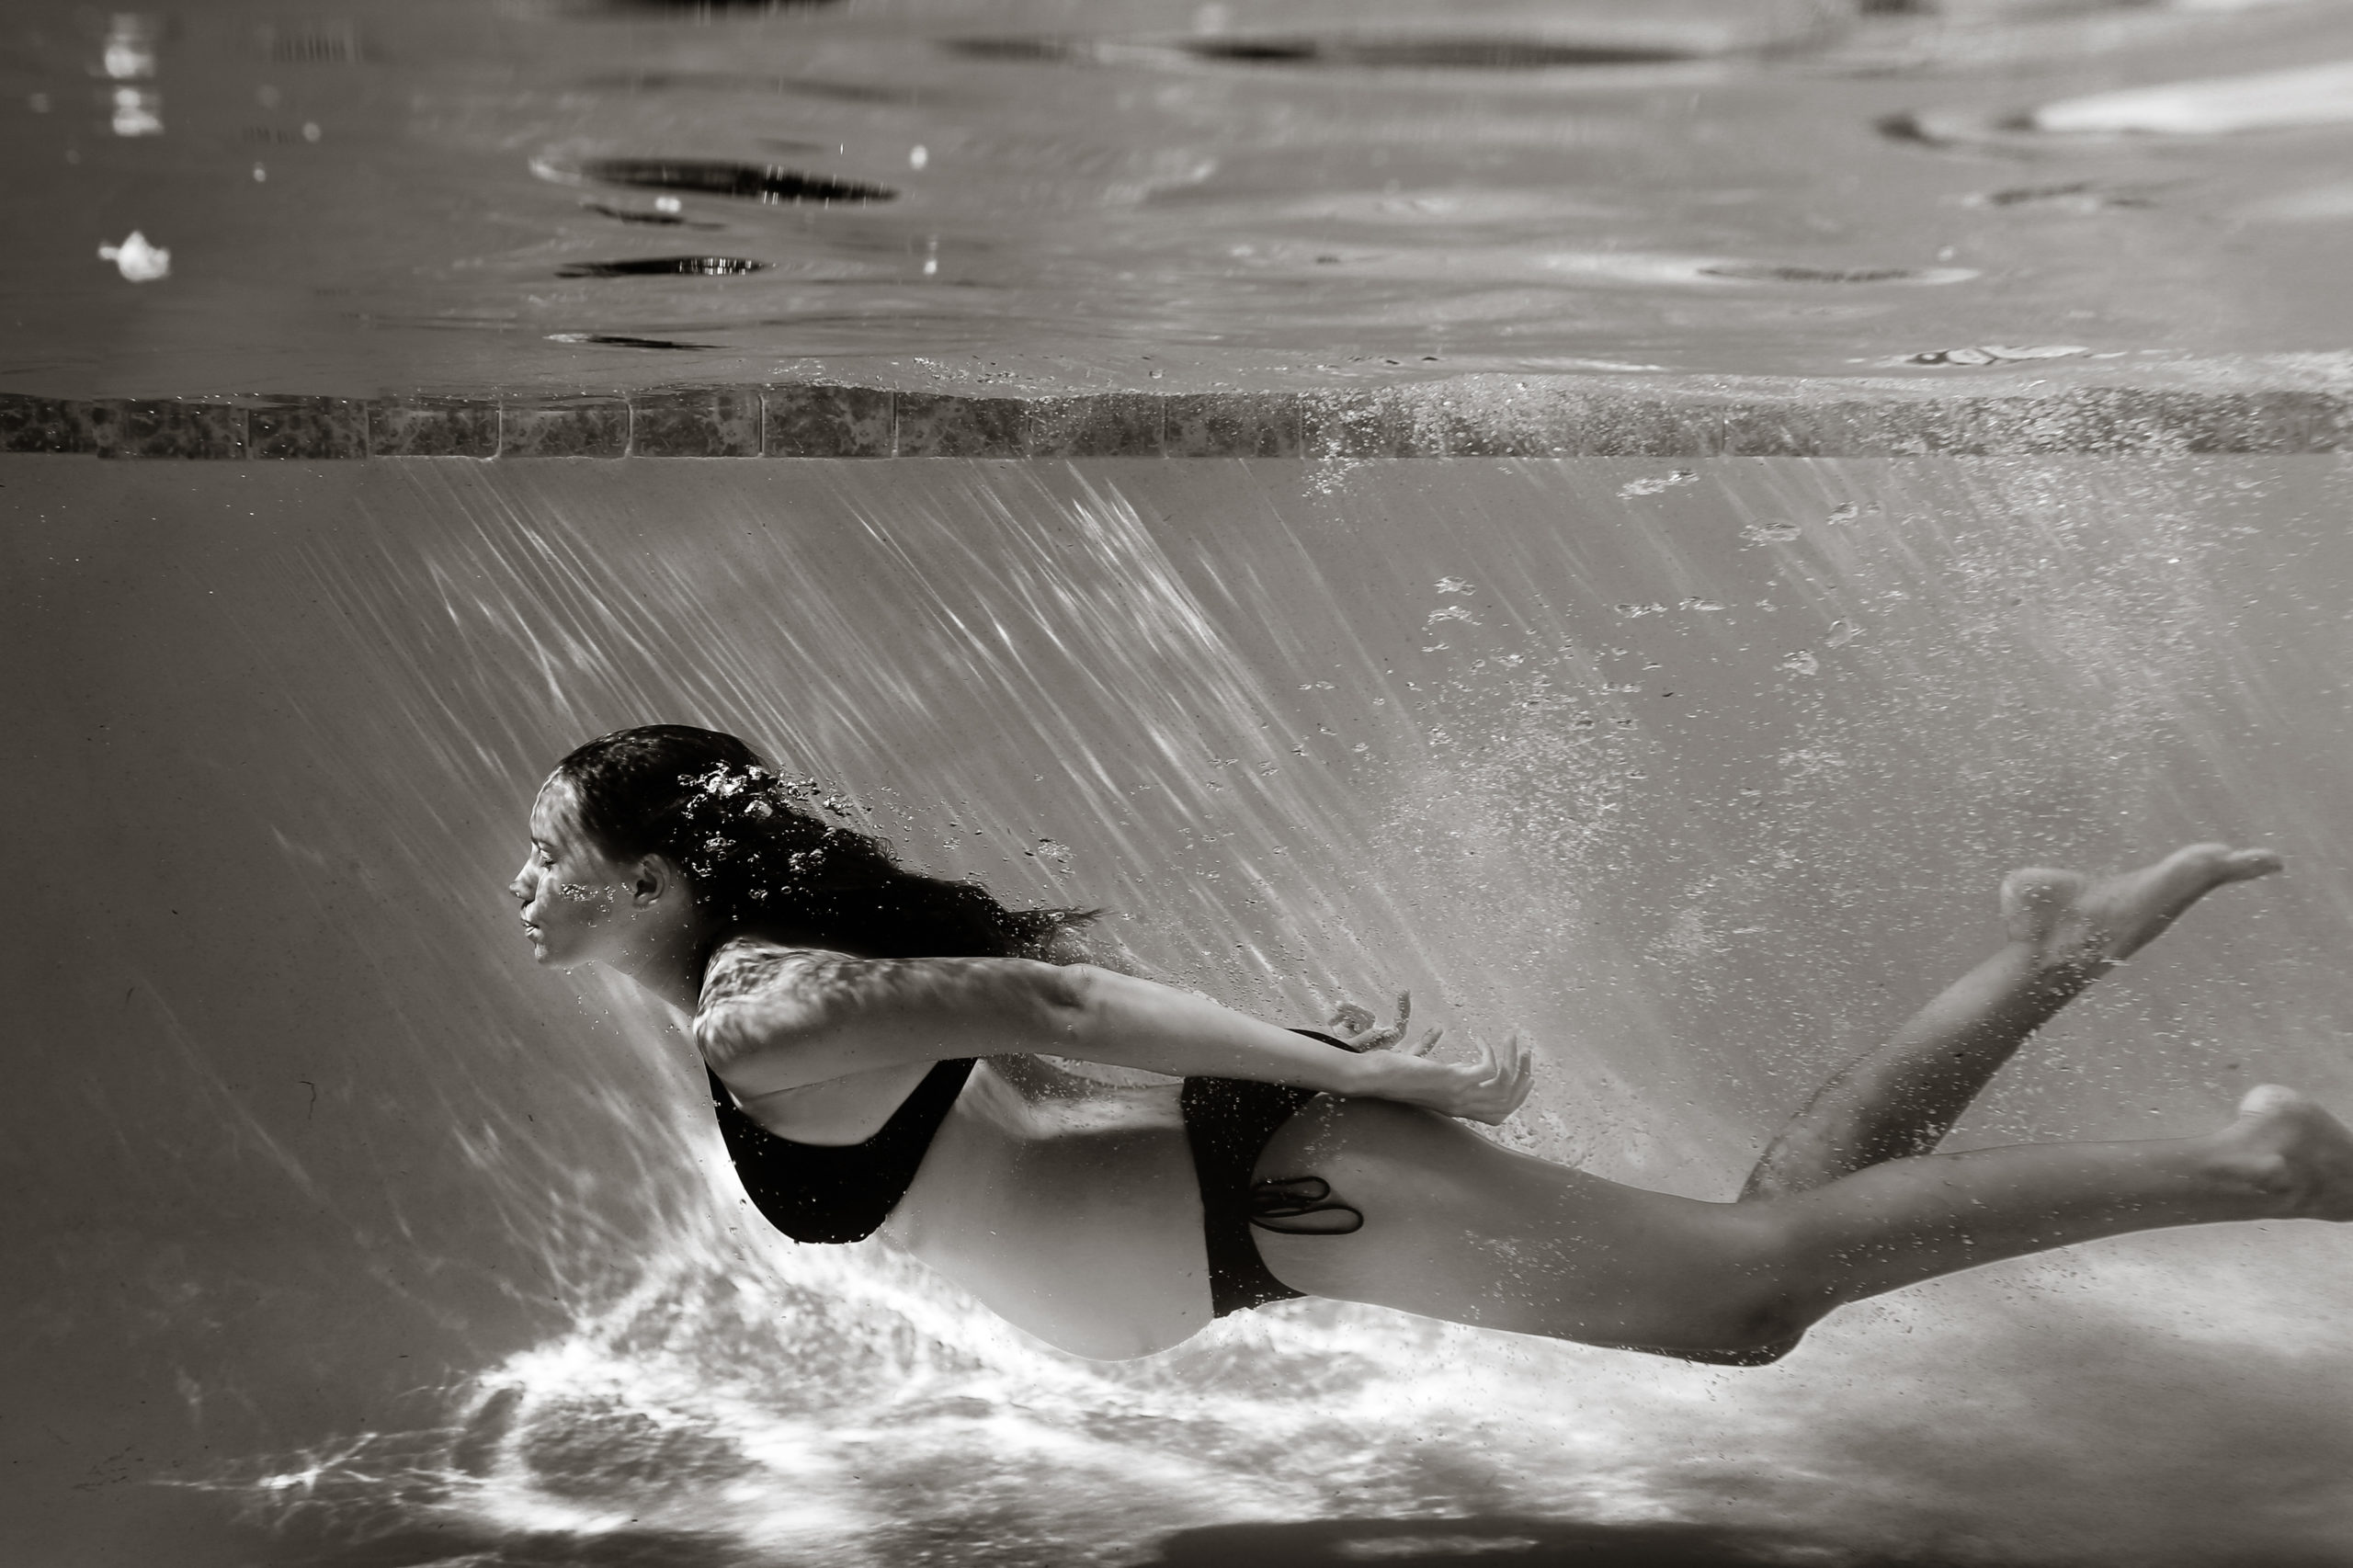 حاملہ عورت کے تالاب میں تیراکی کے خواب کی تعبیر